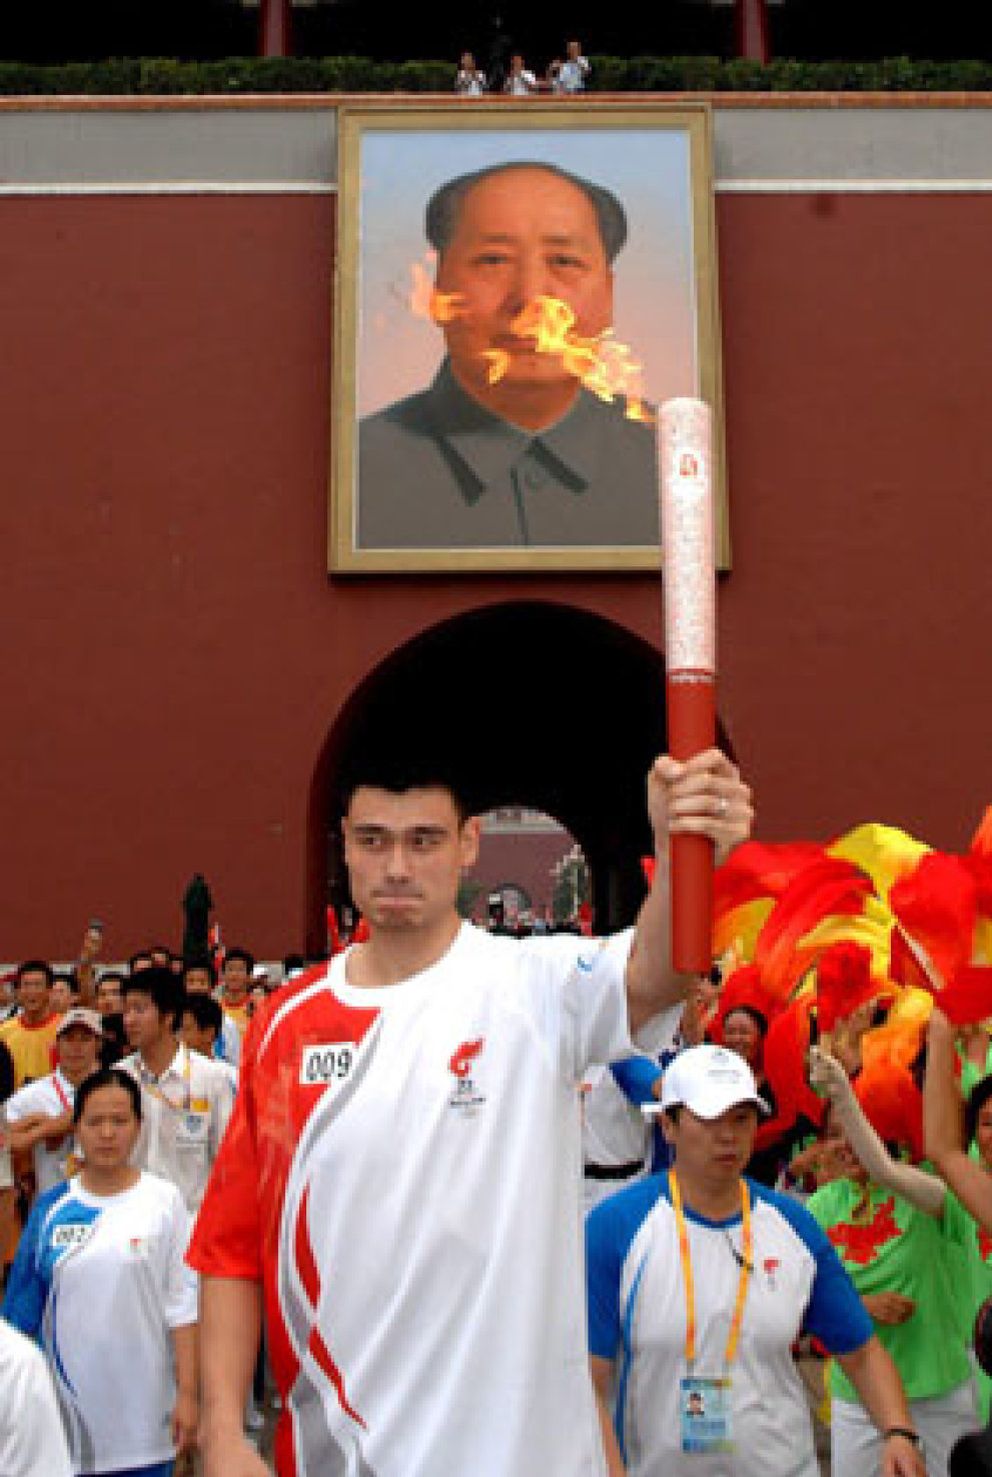 Foto: De héroe patriota a millonario: los medallistas chinos se pasan al capital